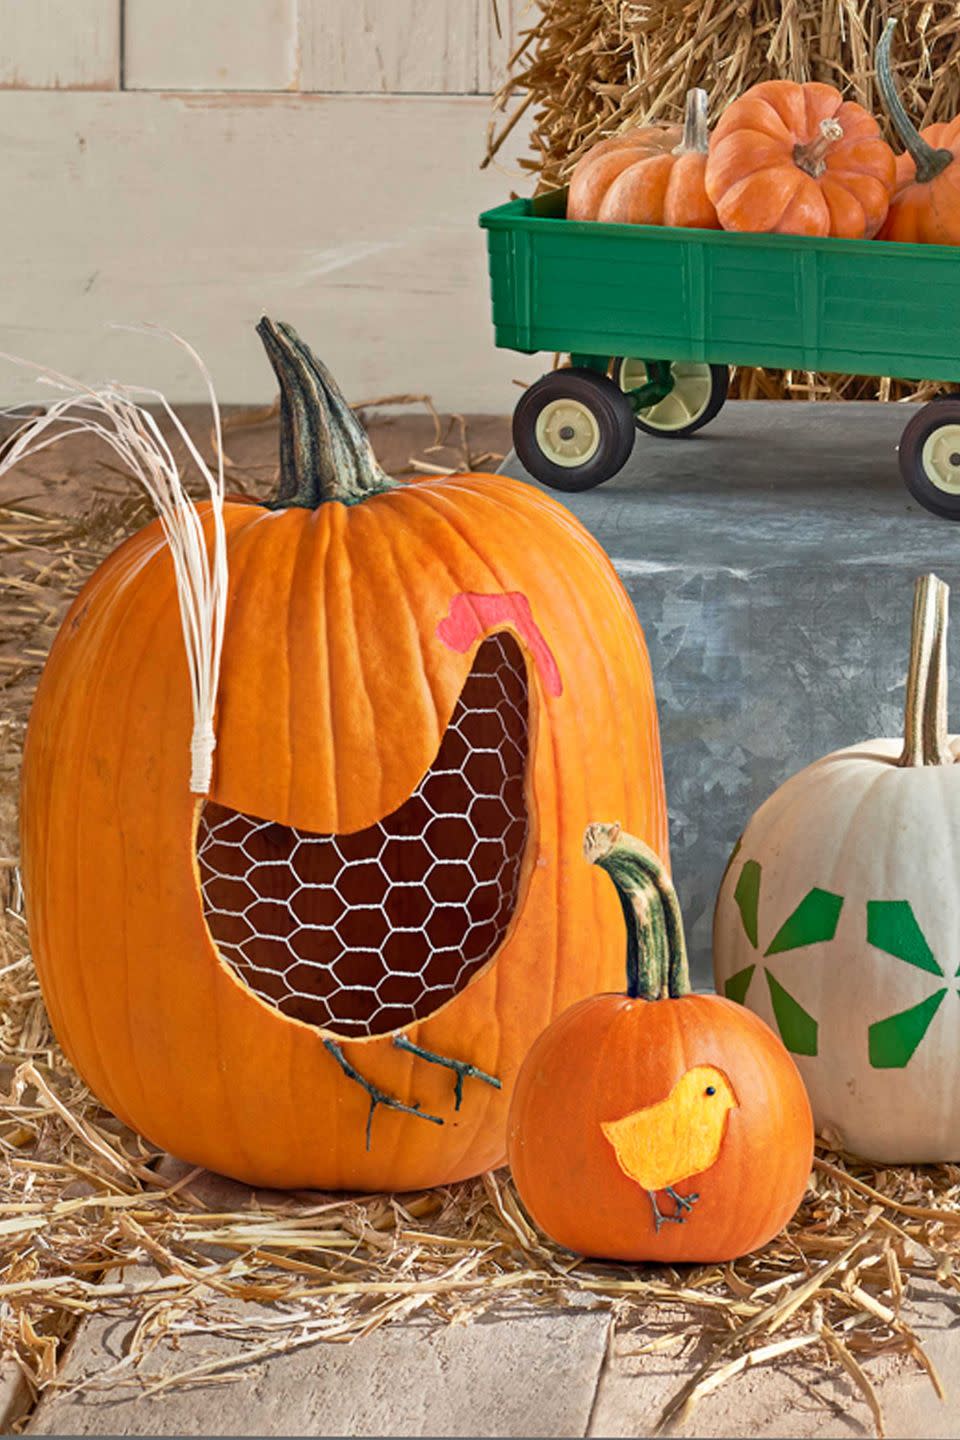 Hen and Chicks Pumpkin Designs